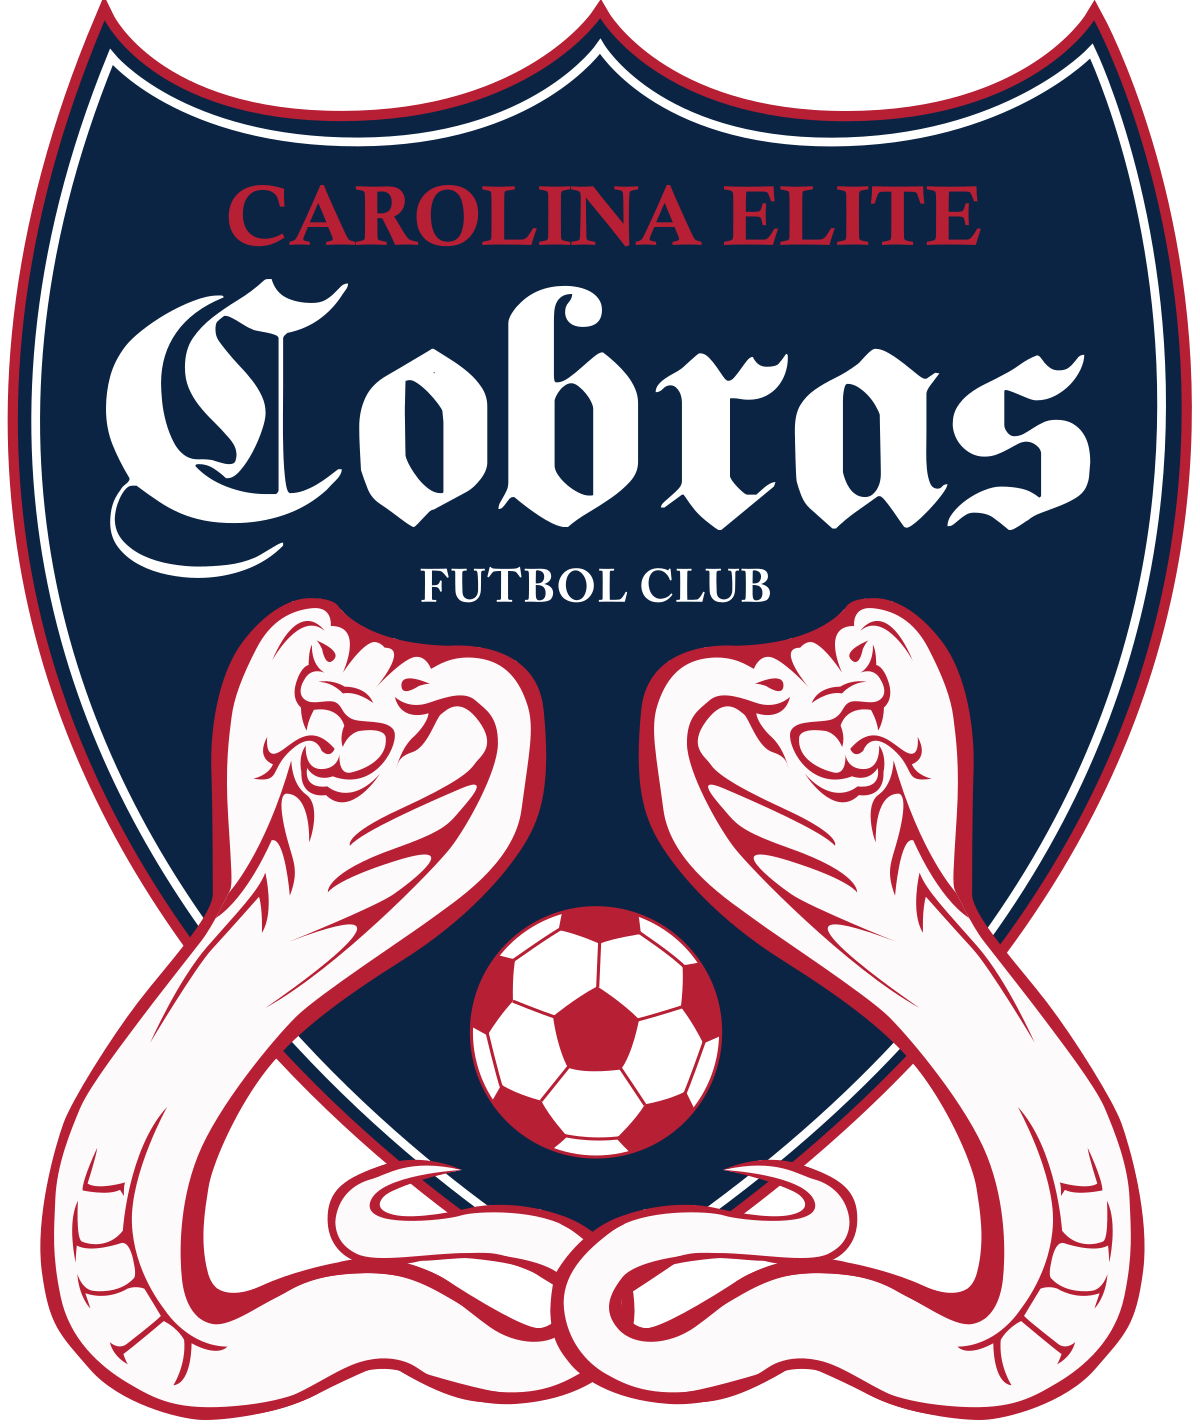 Cobras Sports Logo - Carolina Elite Cobras